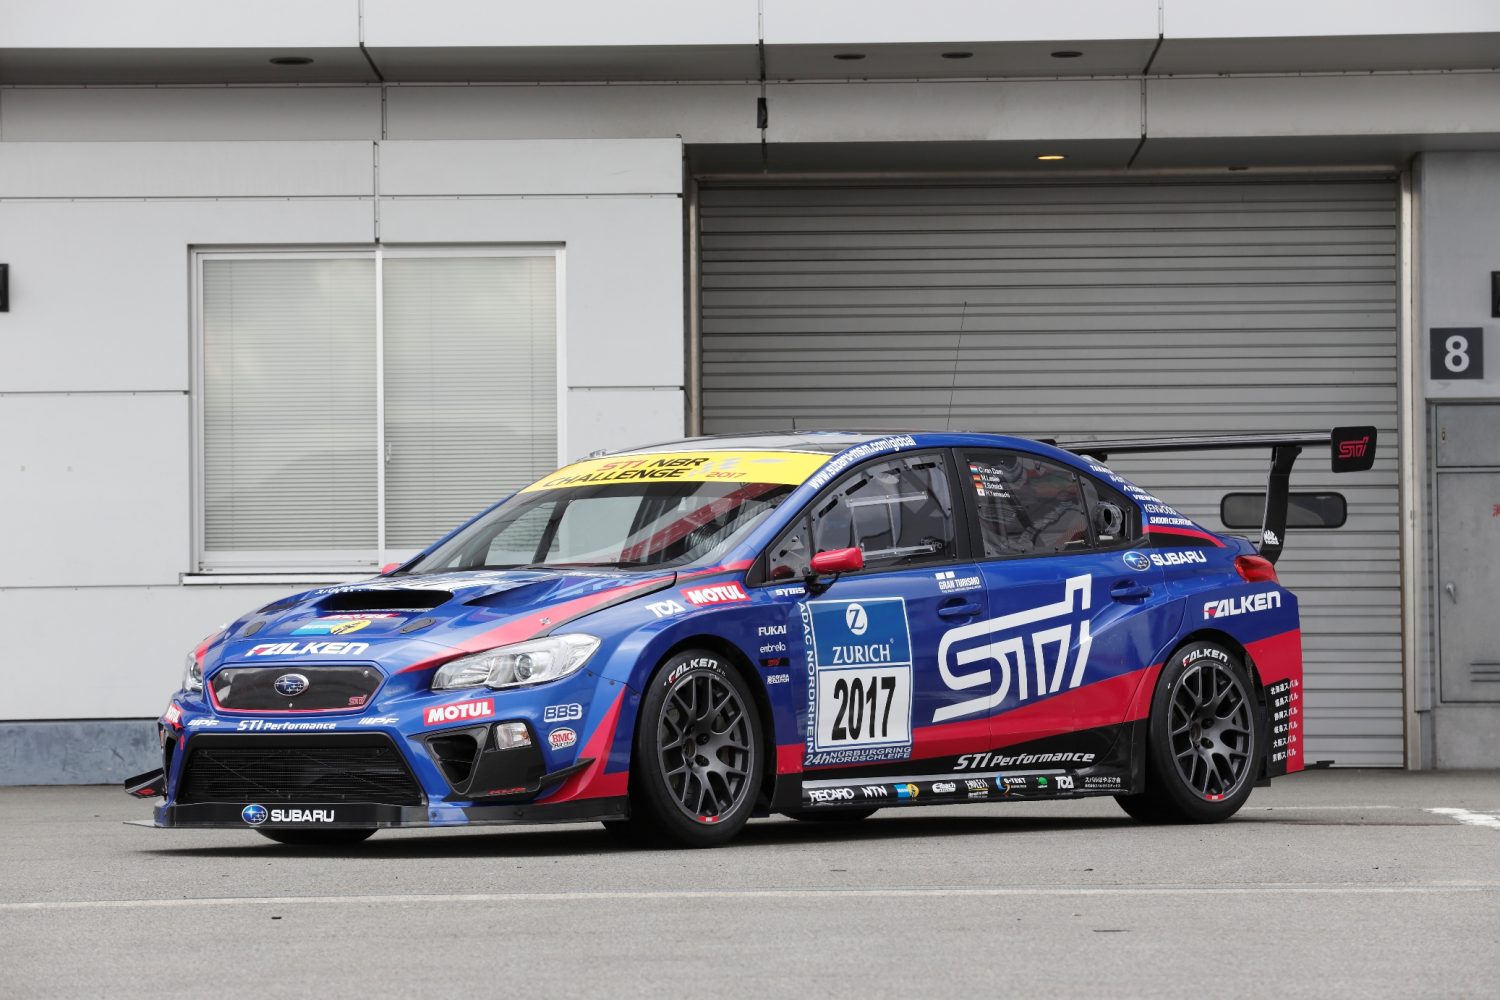 Subaru WRX STI luchará por su quinta victoria en las 24 horas de